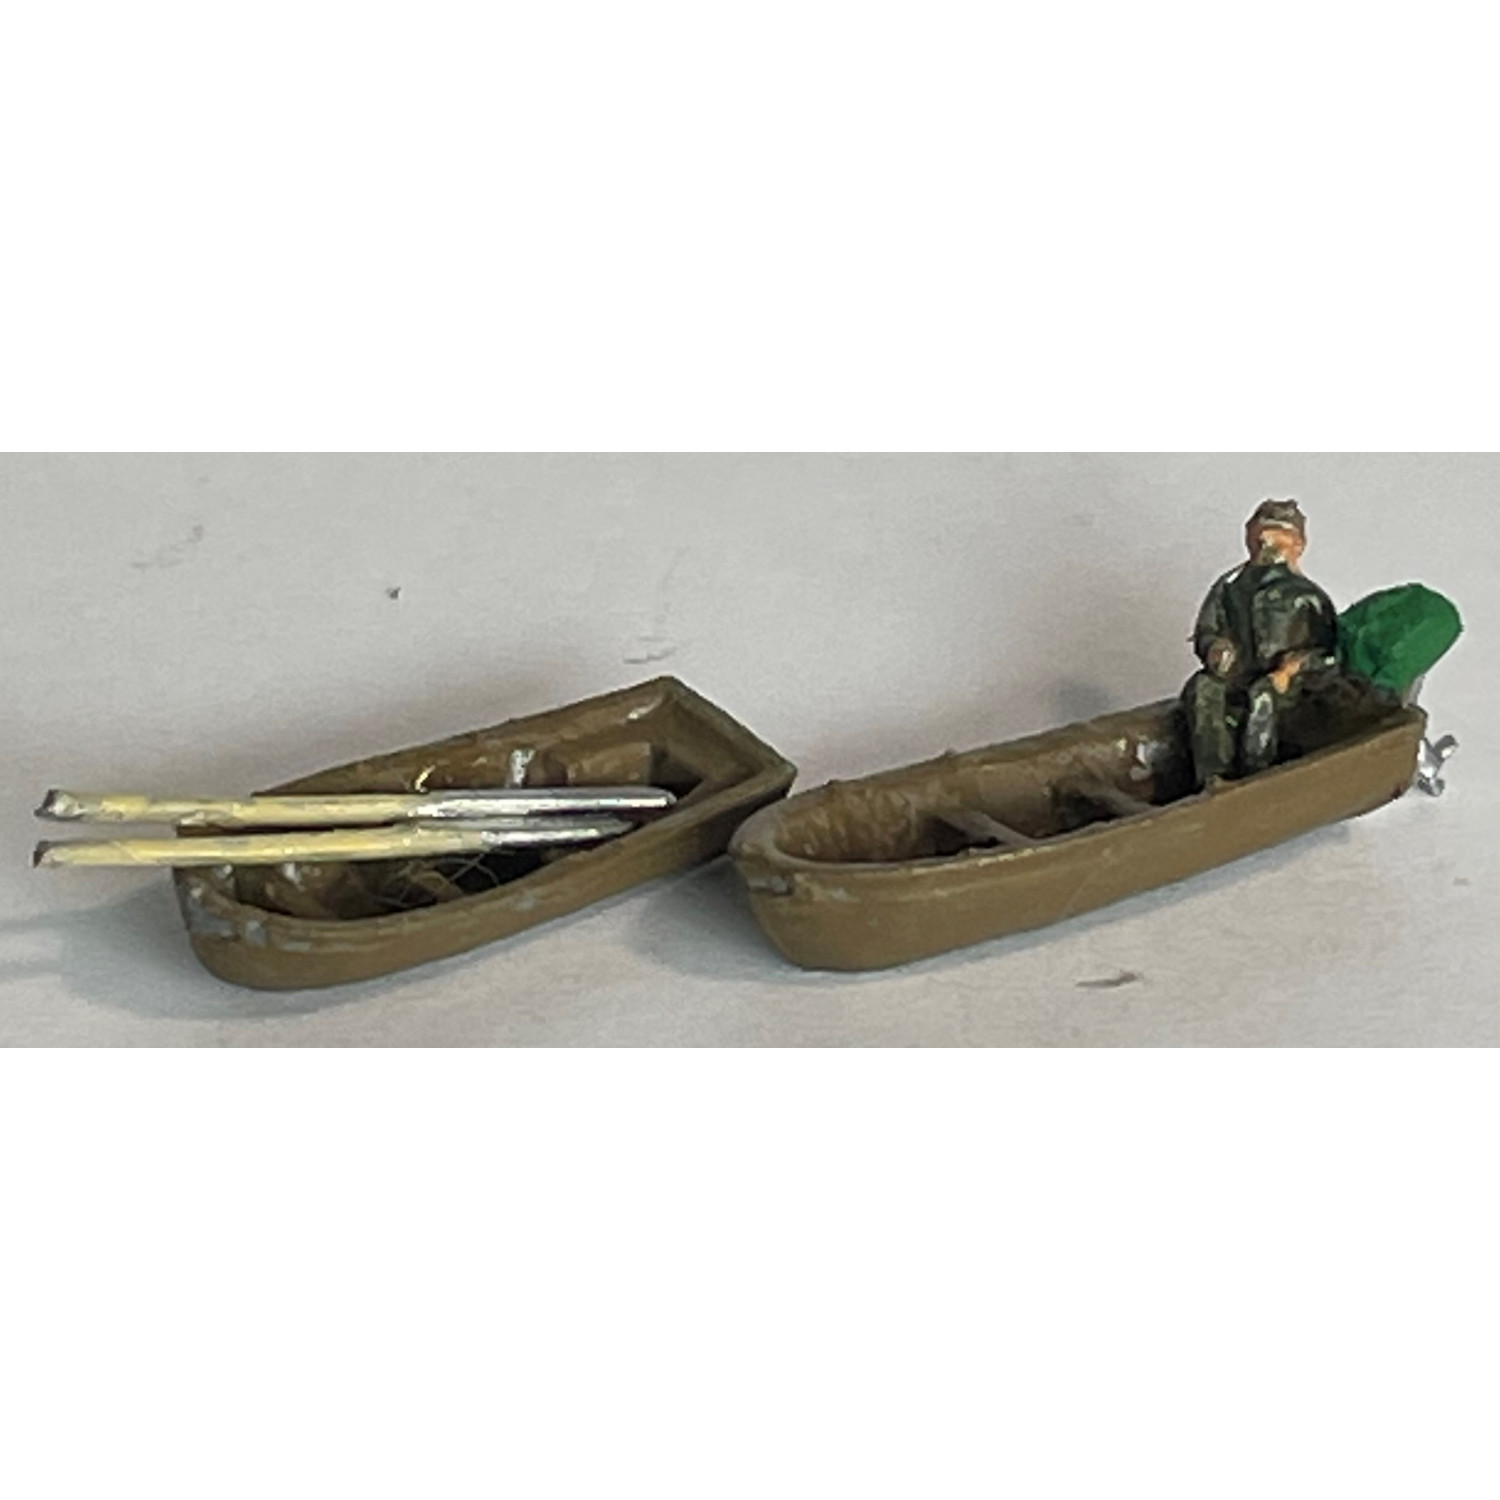 A56b Large Rowing/Motor Boat x 2 or ships tender Unpainted Kit (N